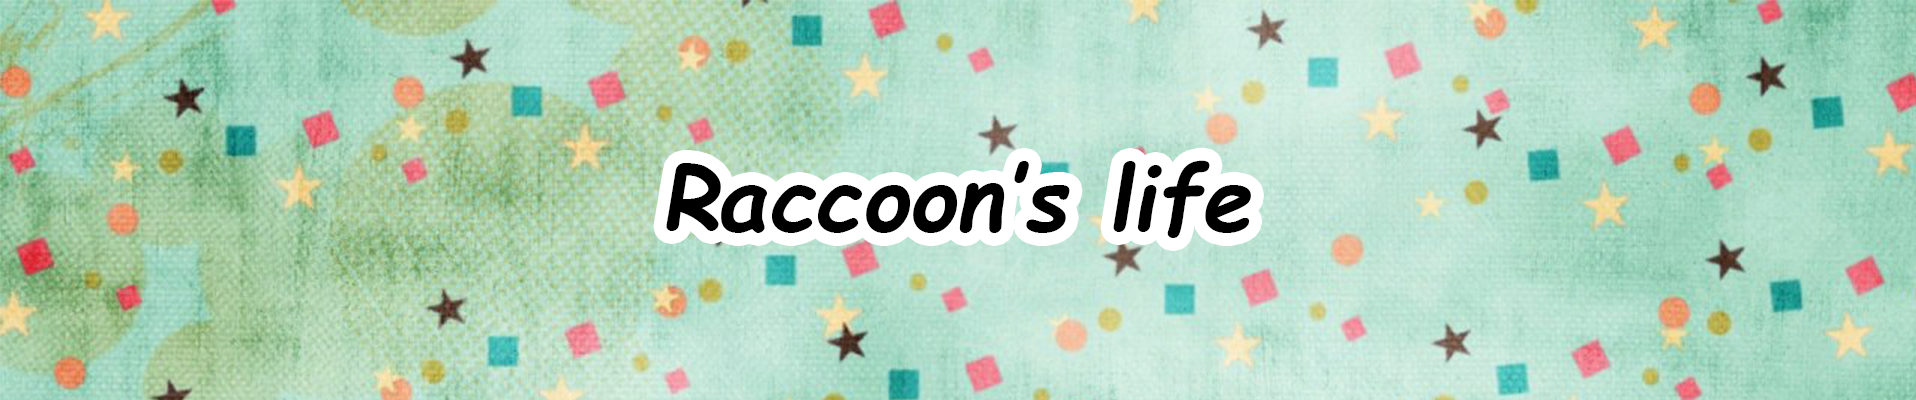 Raccoon's Life